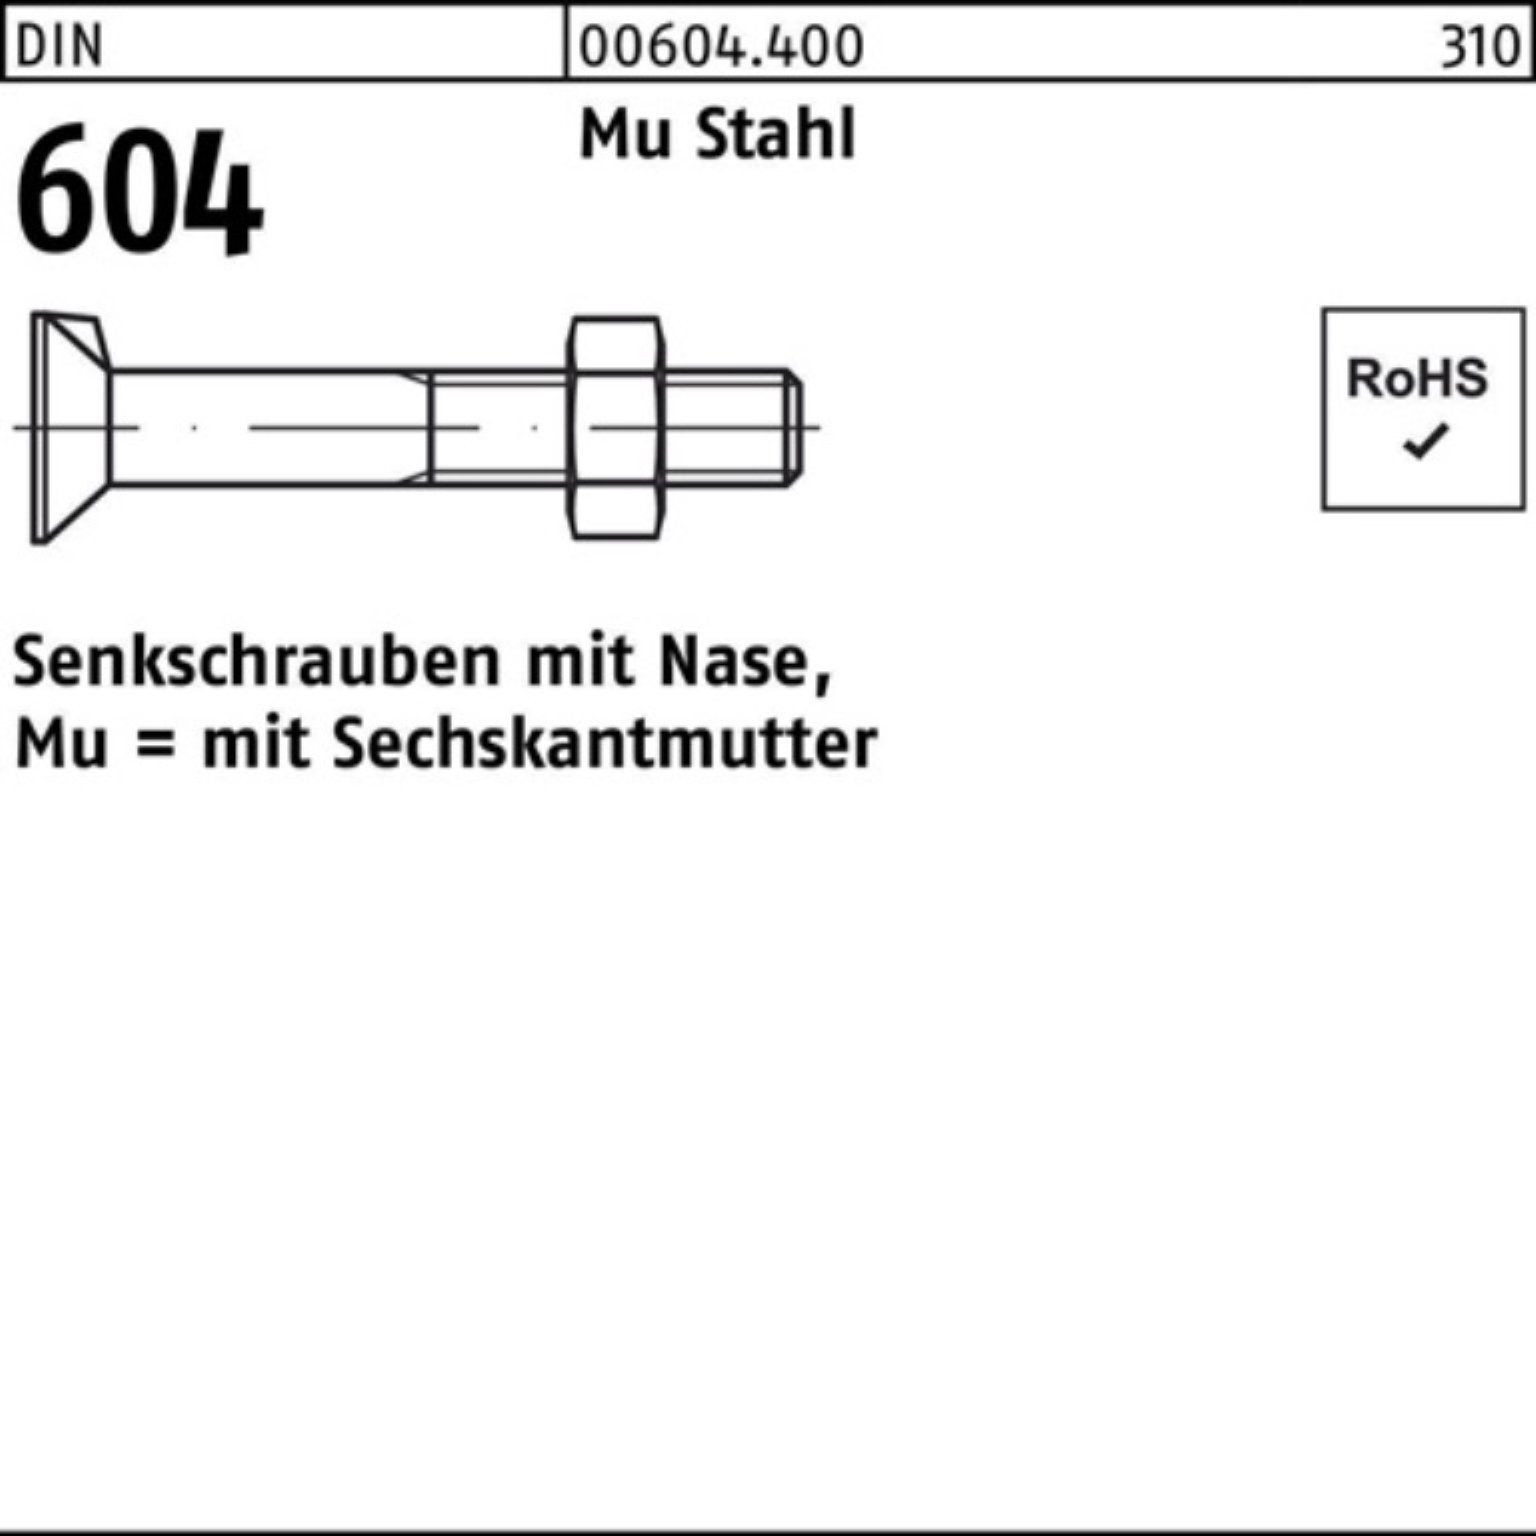 Reyher Senkschraube 100er Pack Senkschraube 80 M12x 604 Nase/6-ktmutter 5 Mu Stahl 4.6 DIN